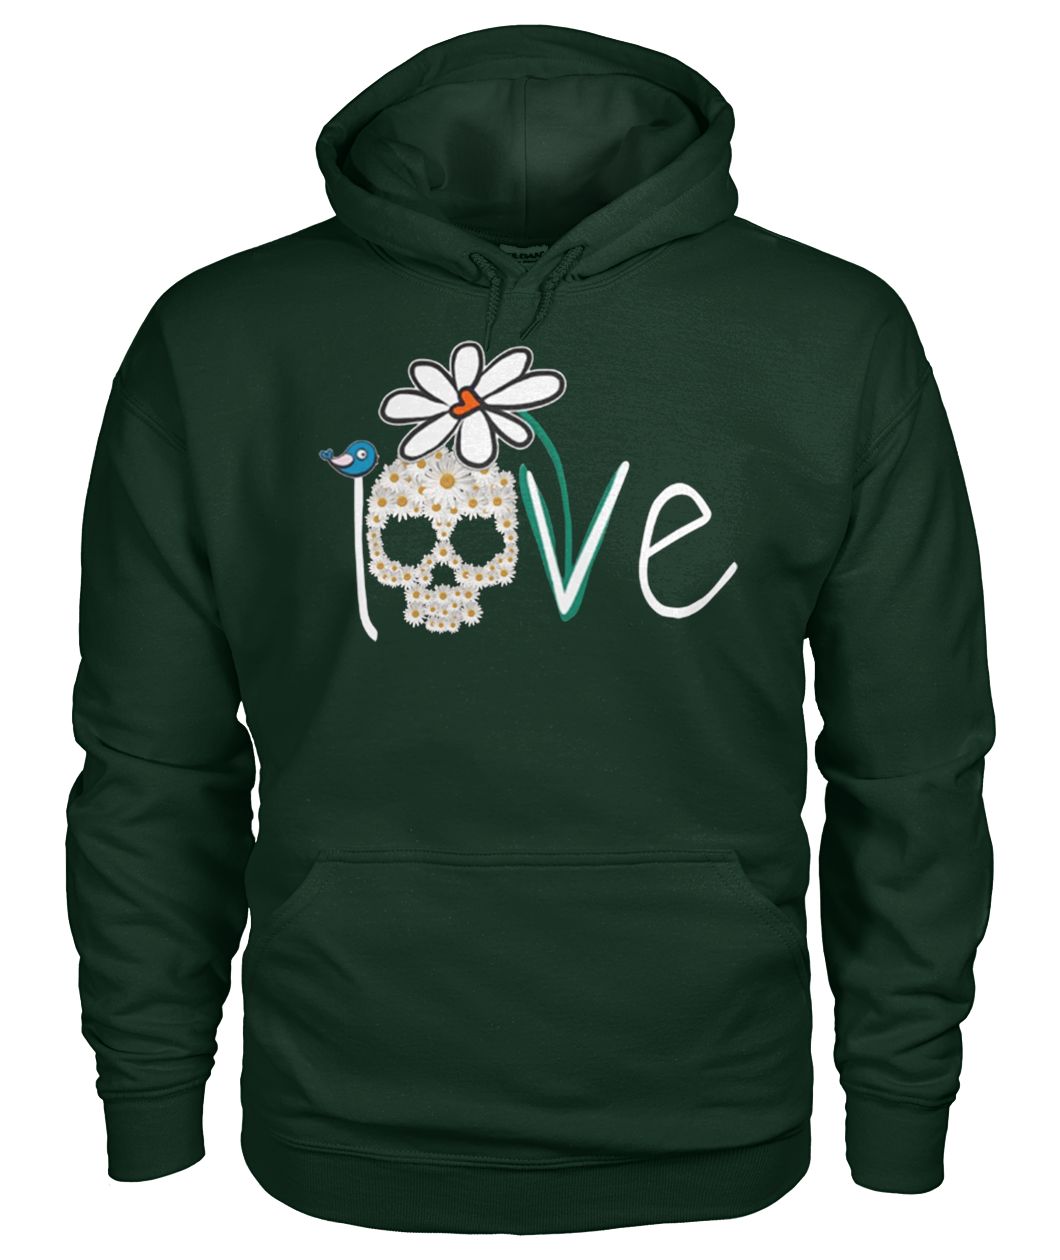 Skull love white daisy flower gildan hoodie